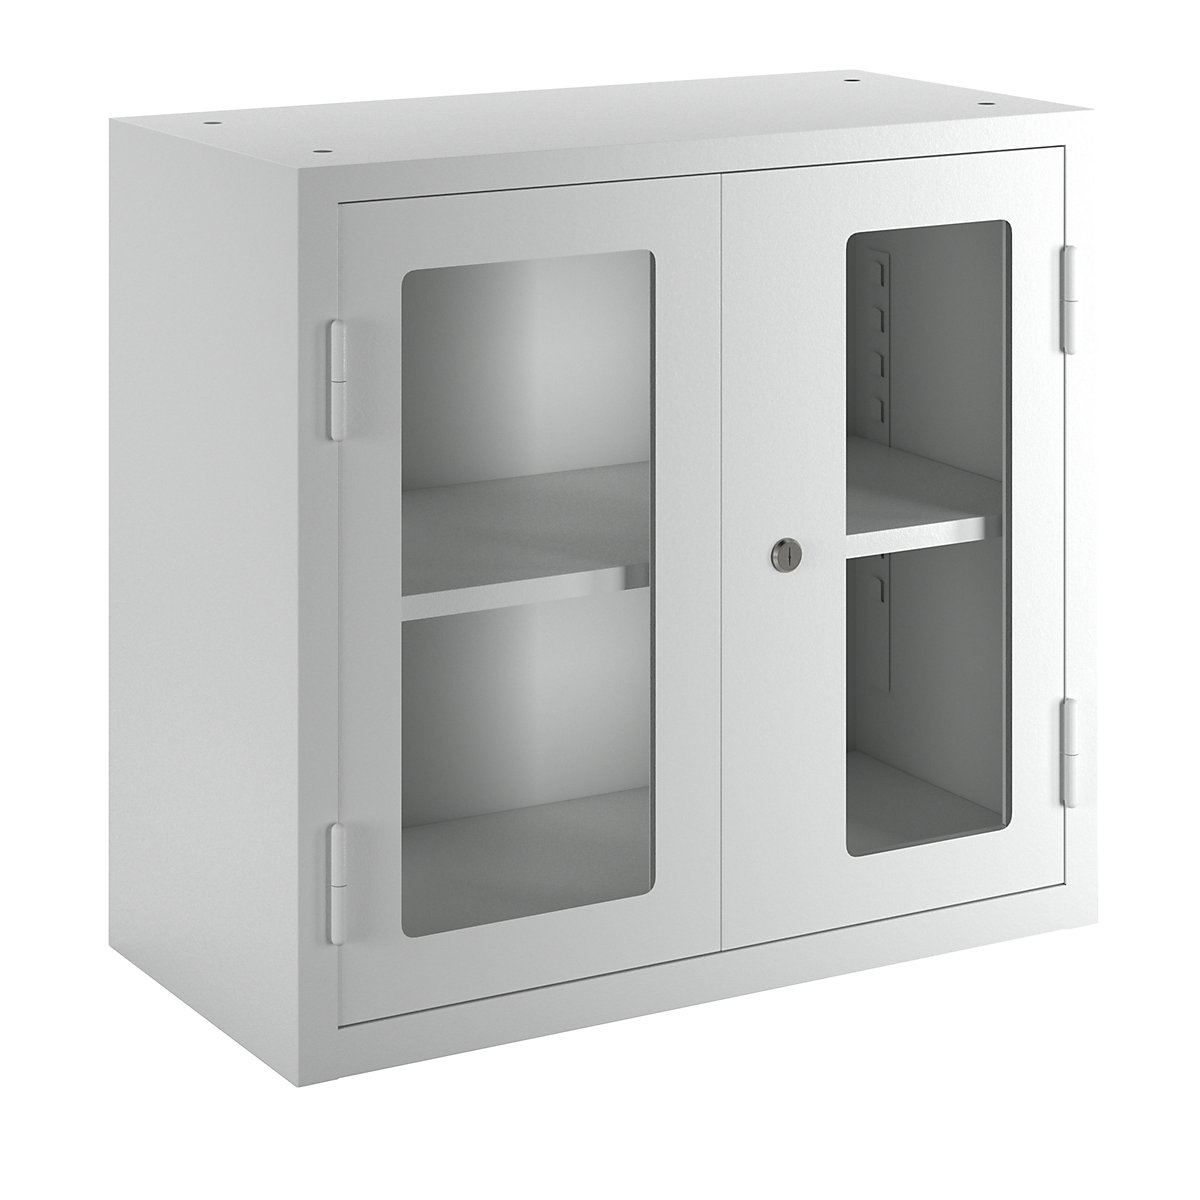 Dílenská závěsná skříň – eurokraft basic, v x š x h 600 x 650 x 320 mm, dveře s pohledovým okénkem, světle šedá RAL 7035-6